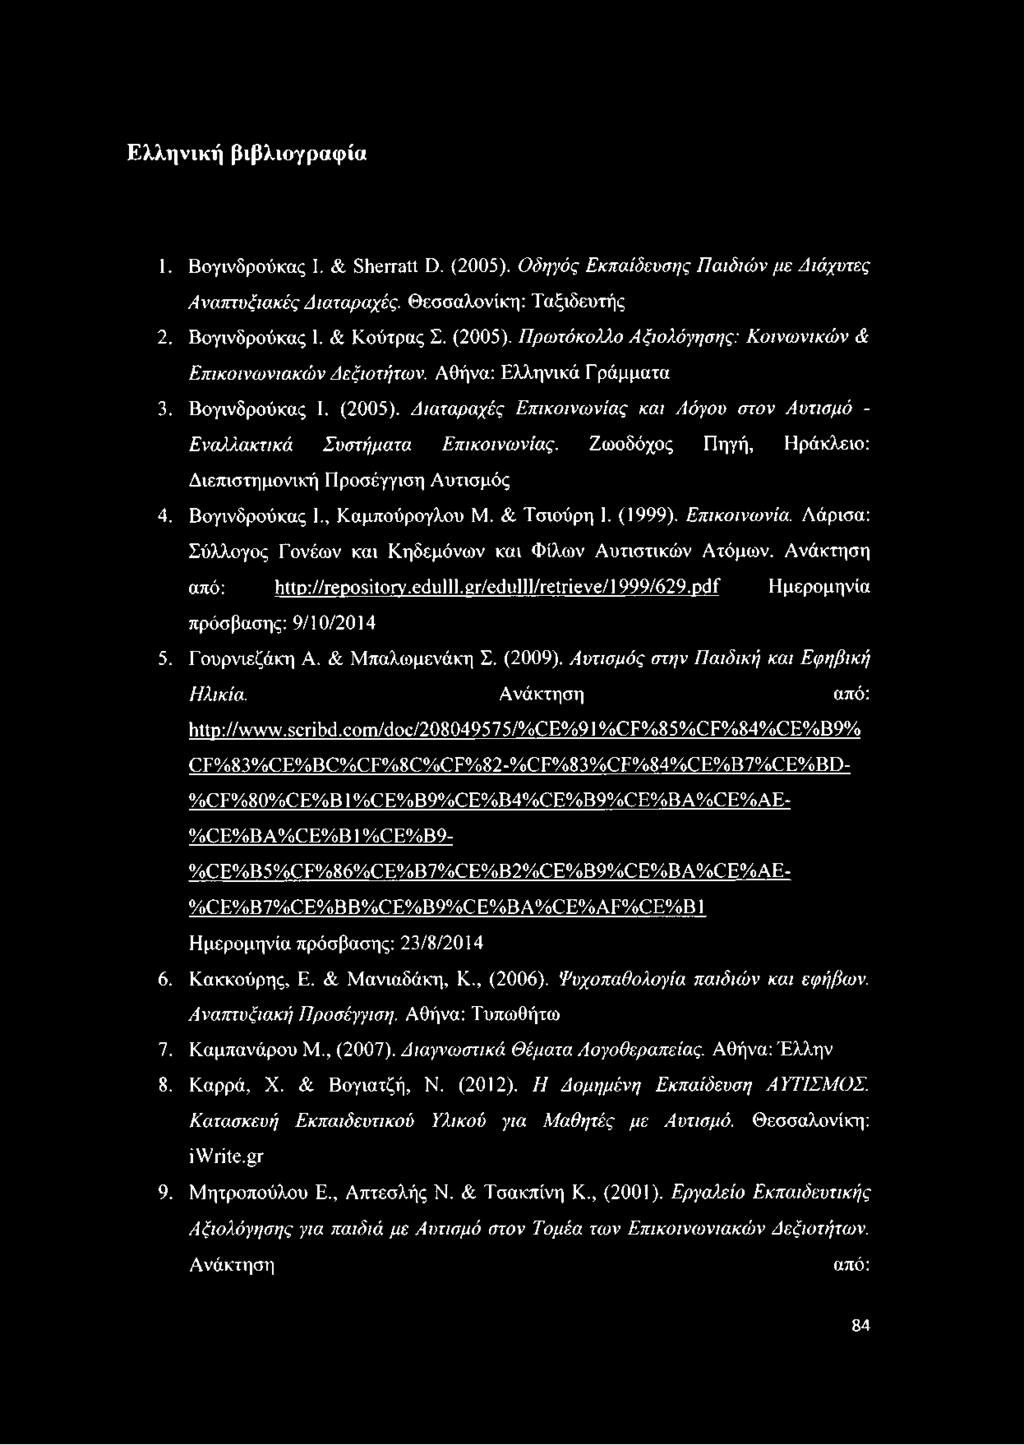 Βογινδρούκας I., Καμπούρογλου Μ. & Τσιούρη I. (1999). Επικοινωνία. Λάρισα: Σύλλογος Γονέων και Κηδεμόνων και Φίλων Αυτιστικών Ατόμων. Ανάκτηση από: http://repository.edulll.